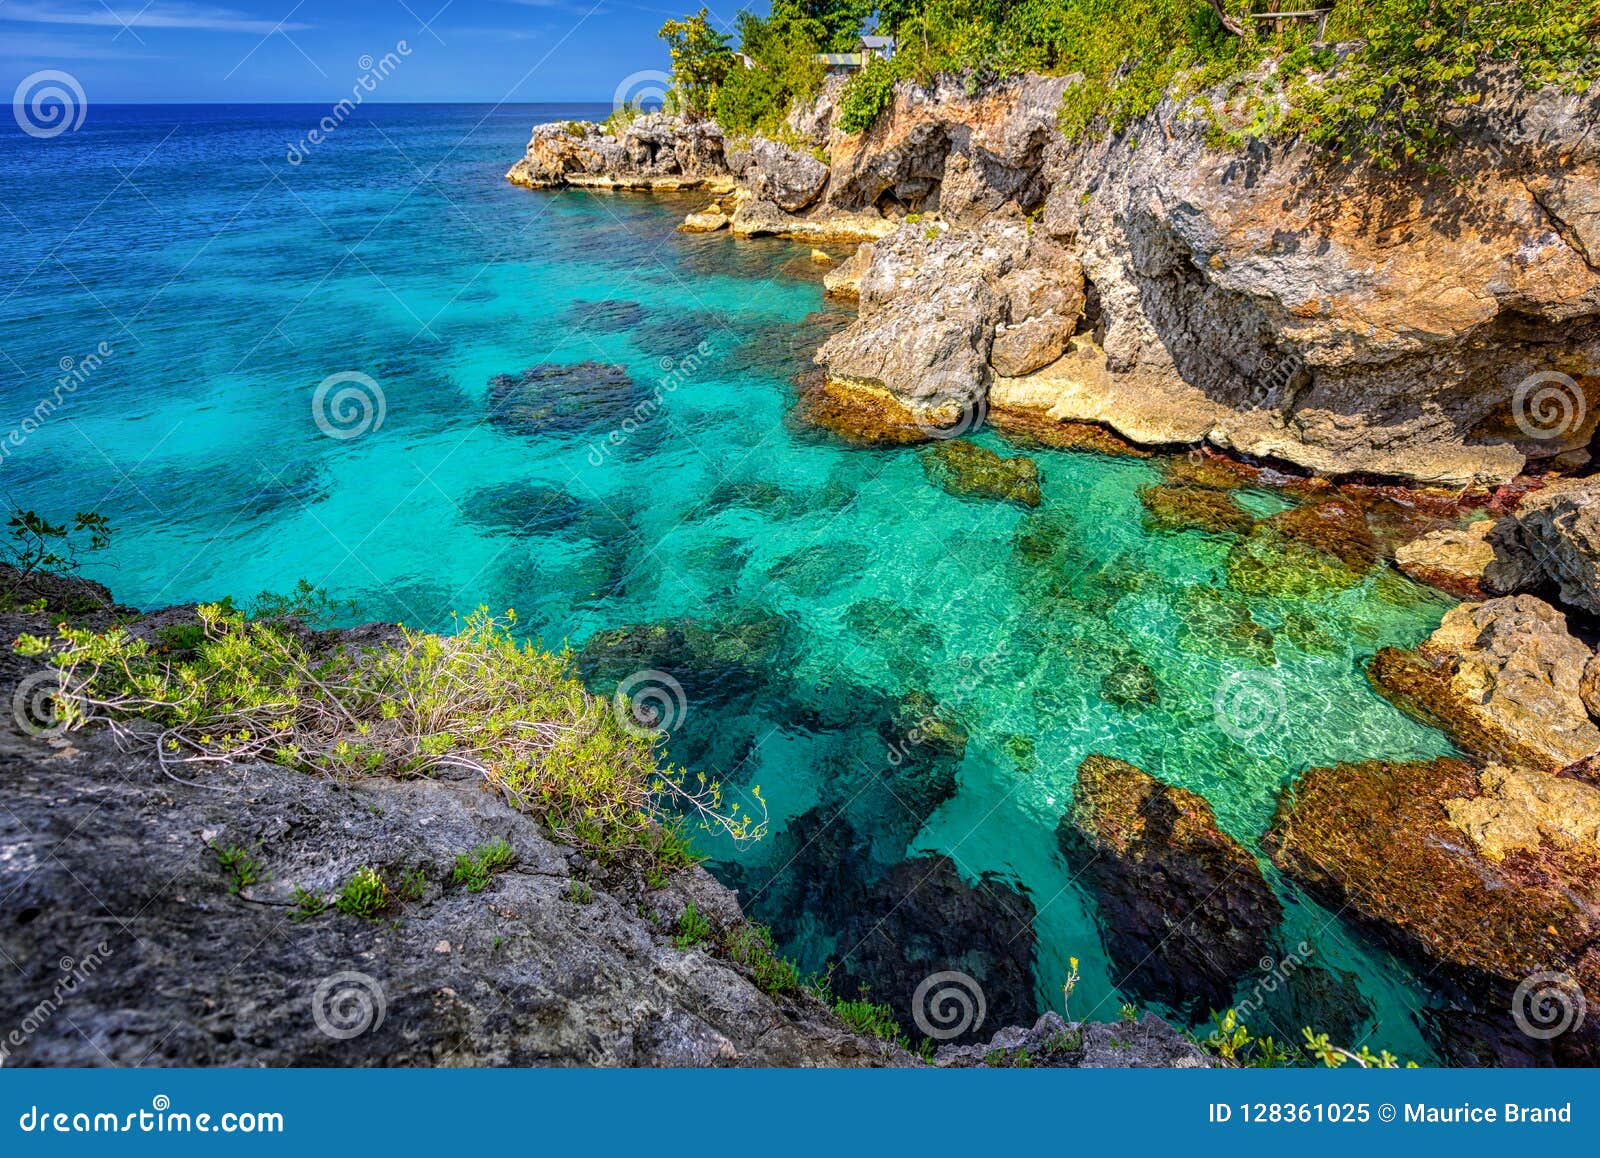 jamaica negril ocean paradise